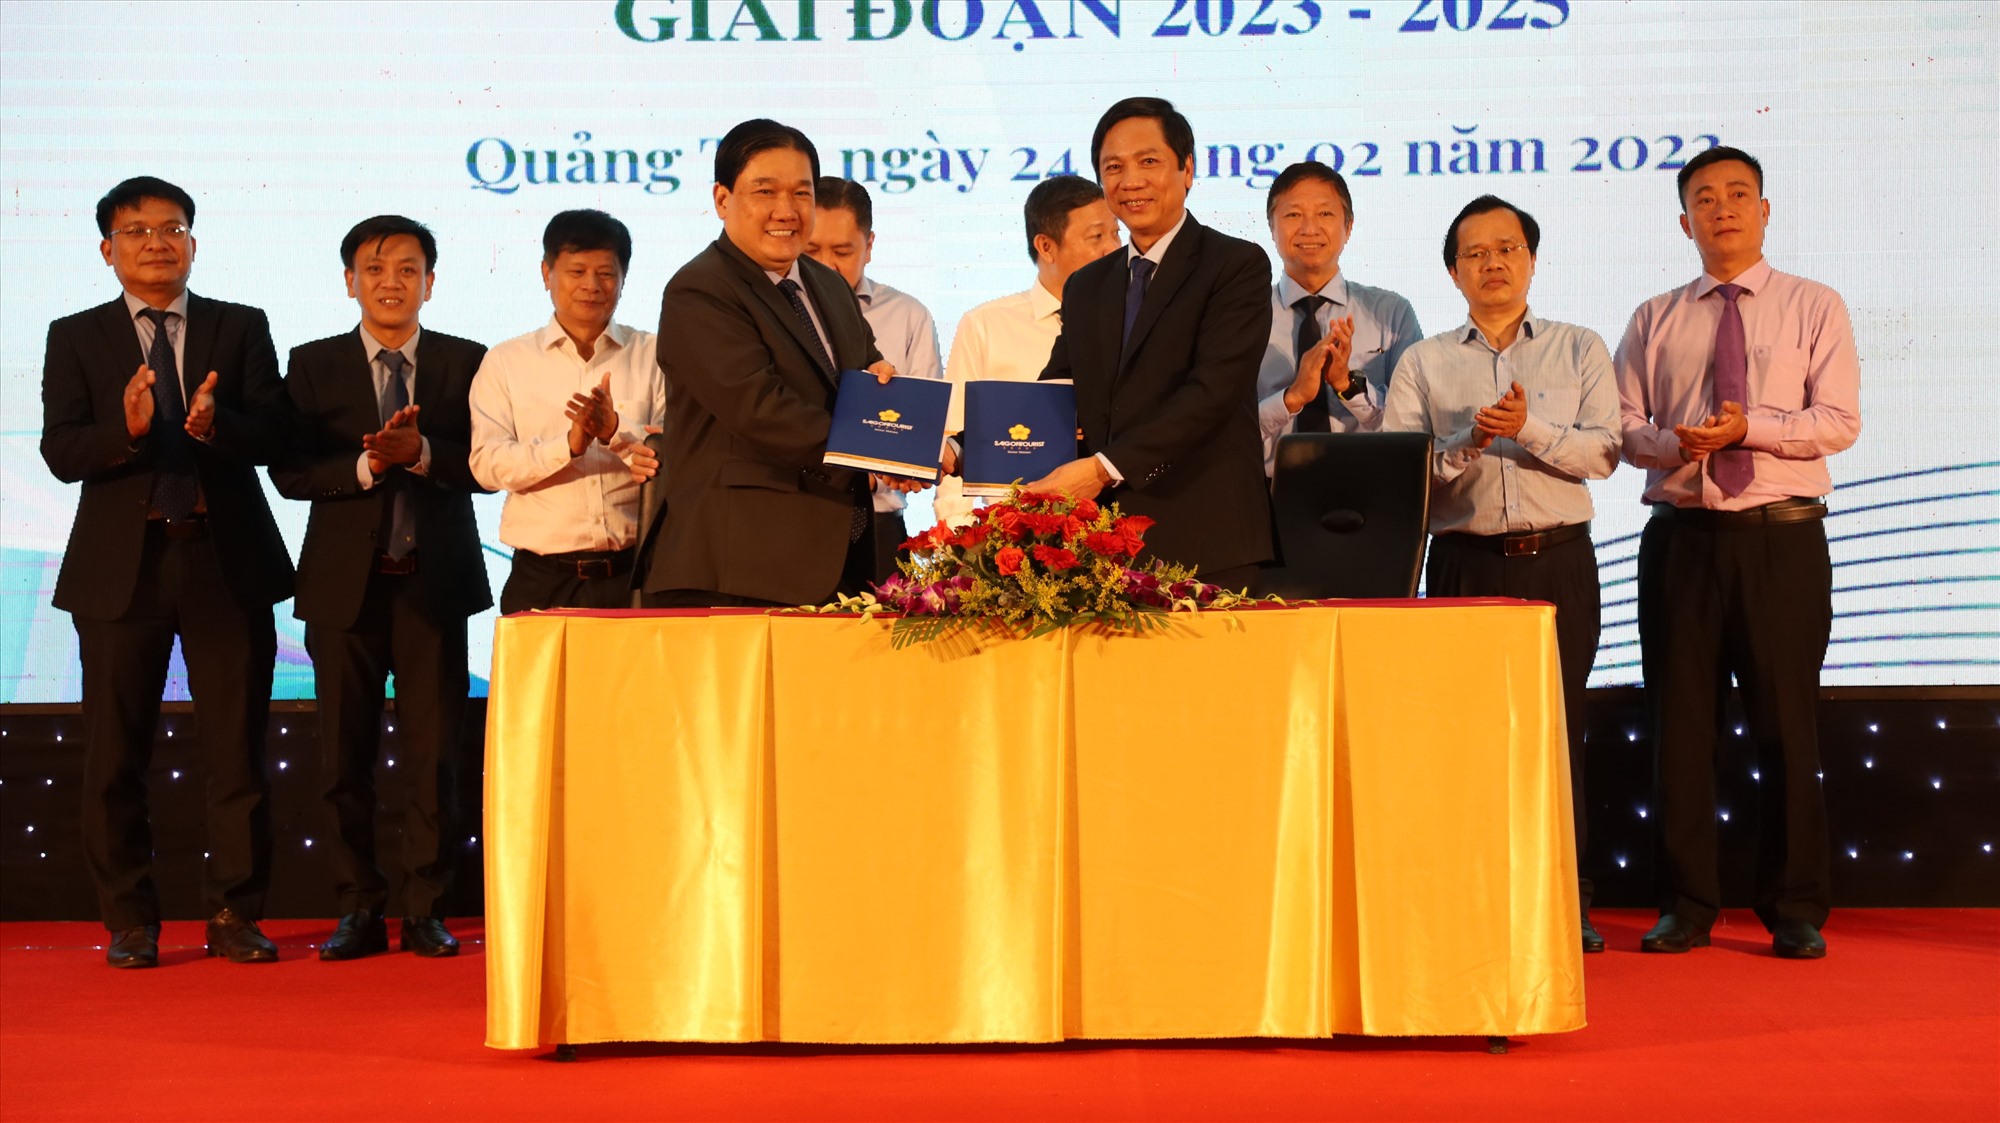 Phó Chủ tịch UBND tỉnh Hoàng Nam và lãnh đạo Saigontourist Group ký kết bản thỏa thuận hợp tác phát triển du lịch giai đoạn 2023 – 2025 - Ảnh: T.P